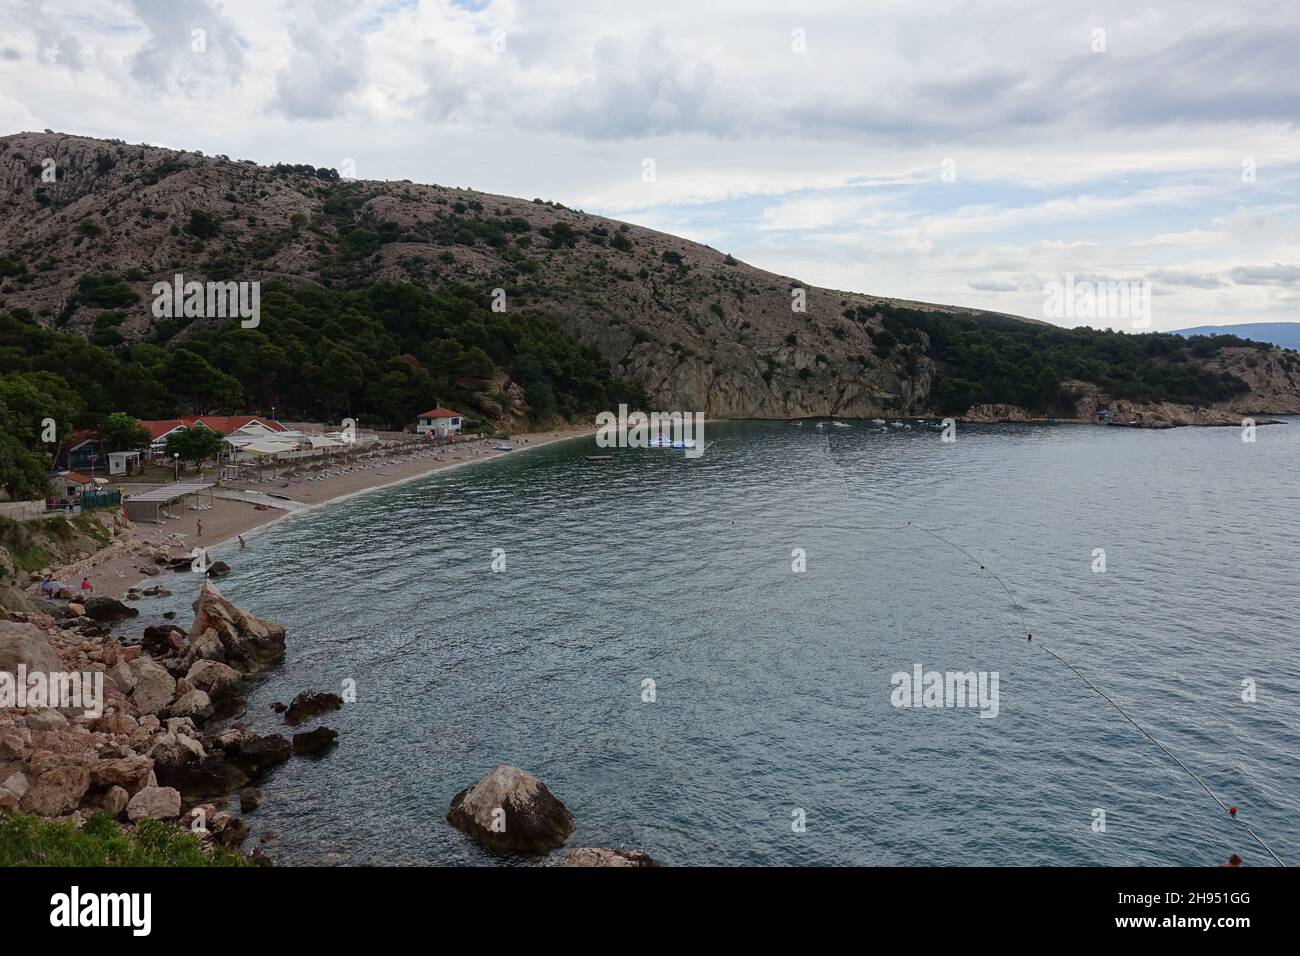 côte méditerranéenne en istrie croatie - photos uniques de l'été 2021 Banque D'Images